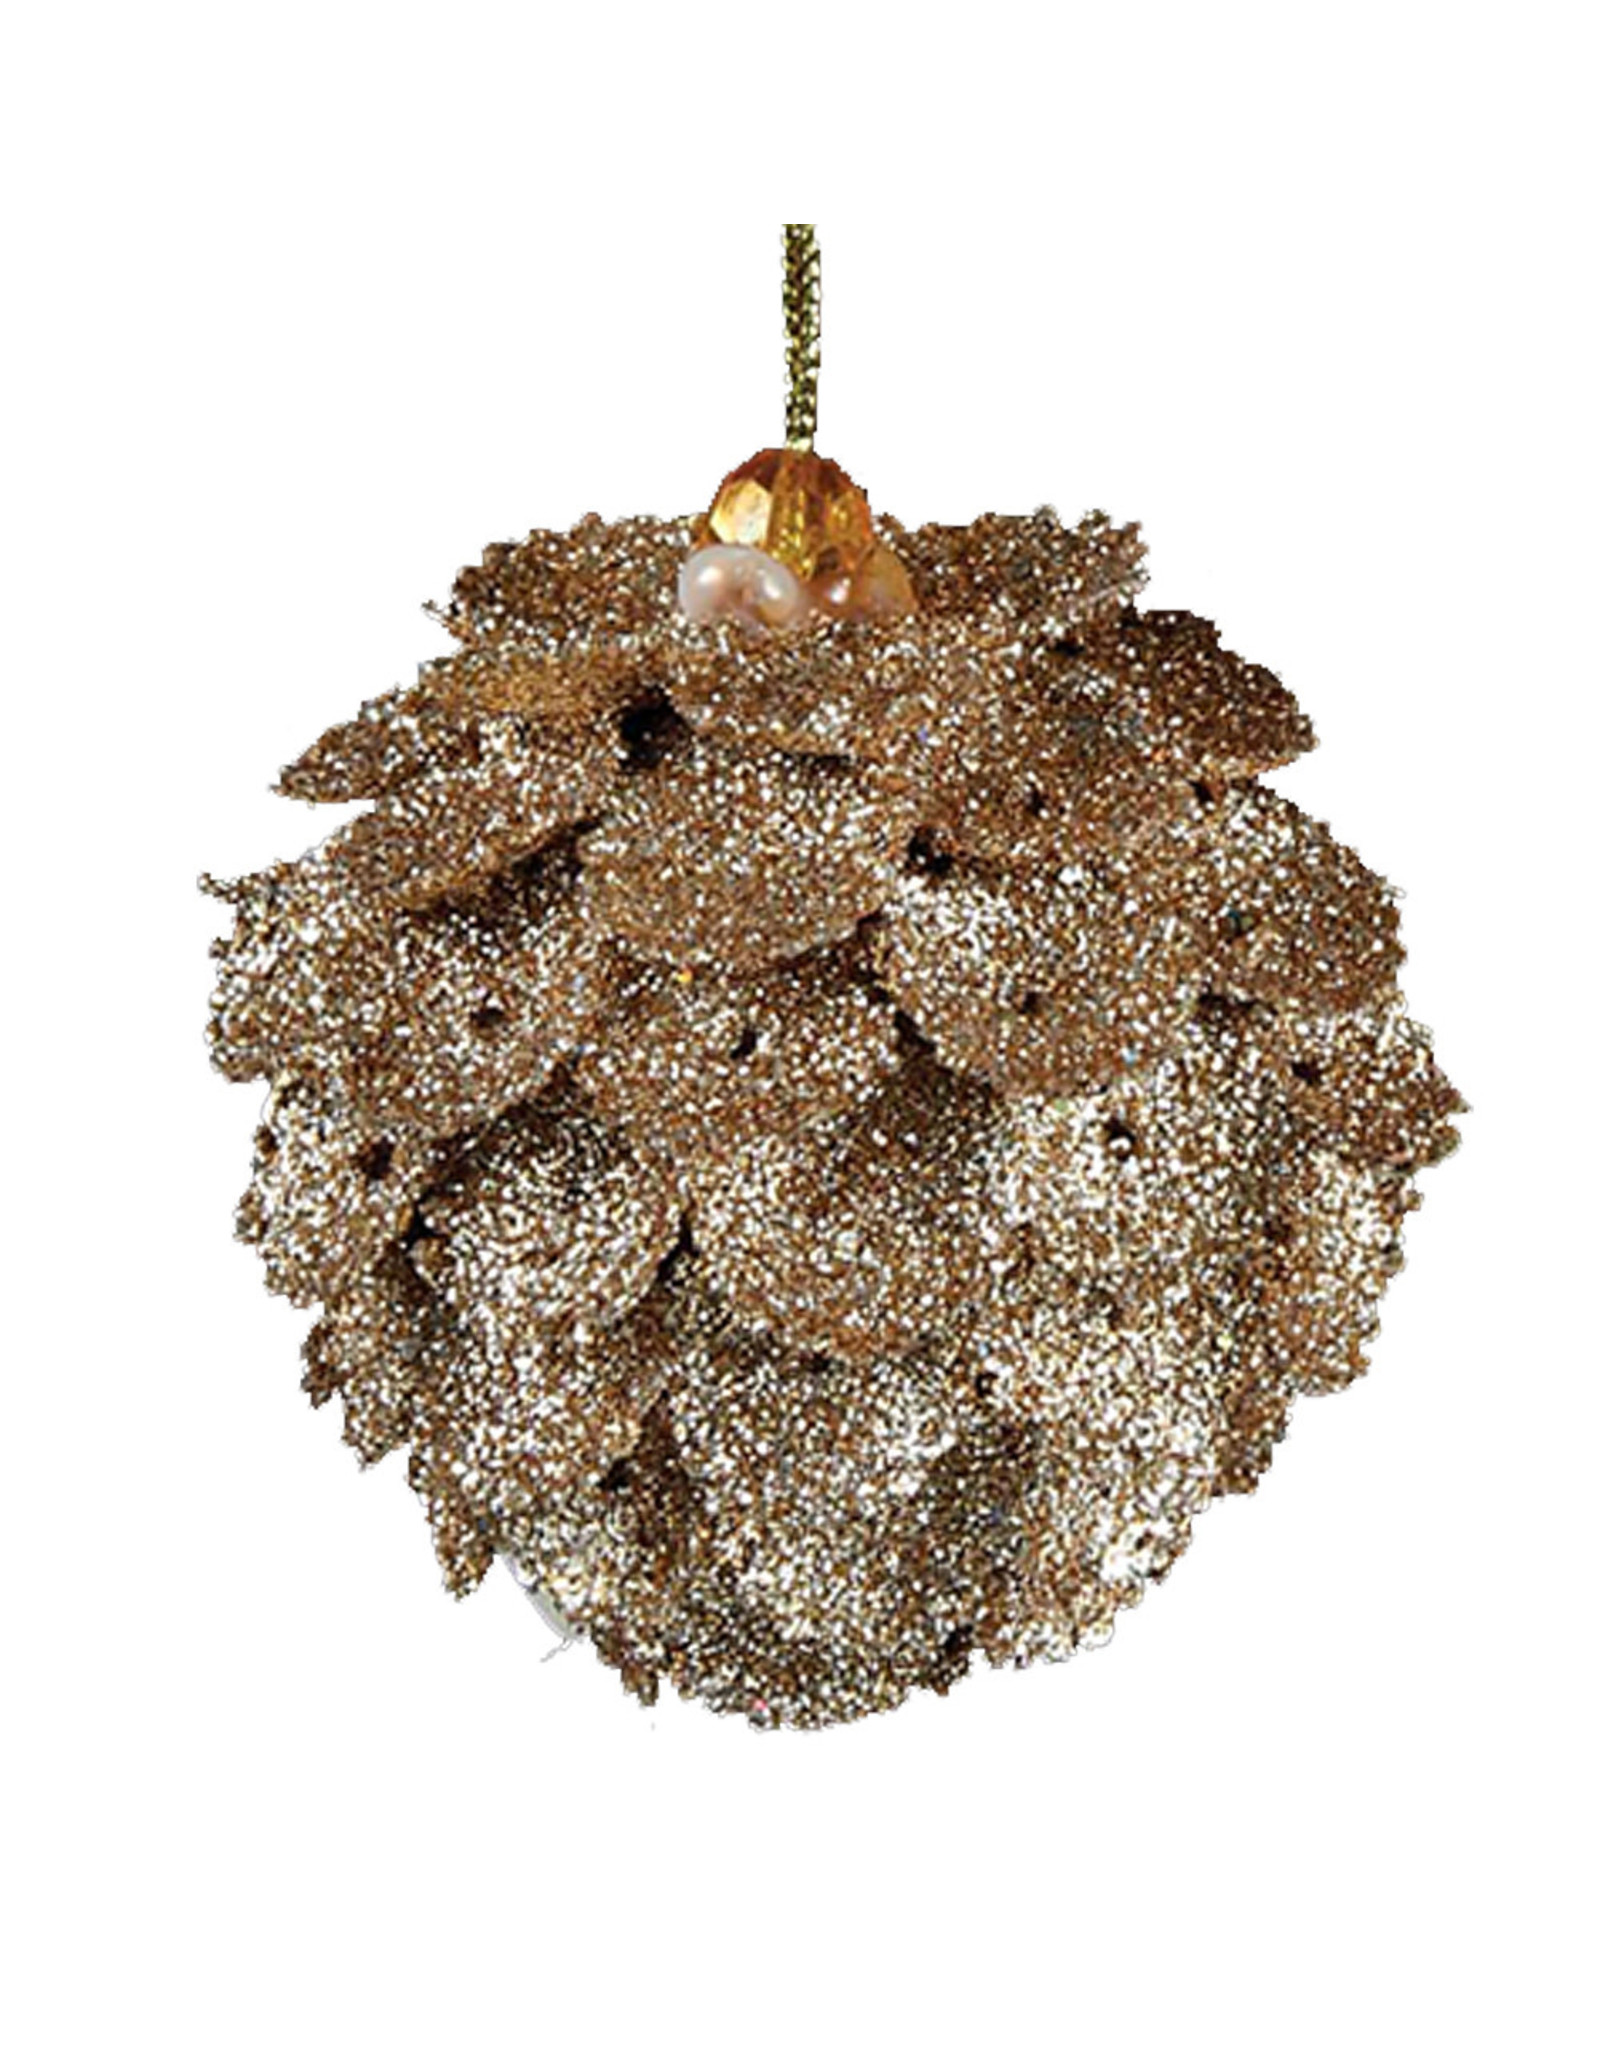 Kurt Adler Christmas Ornament Gold Glittered Pinecone BALL